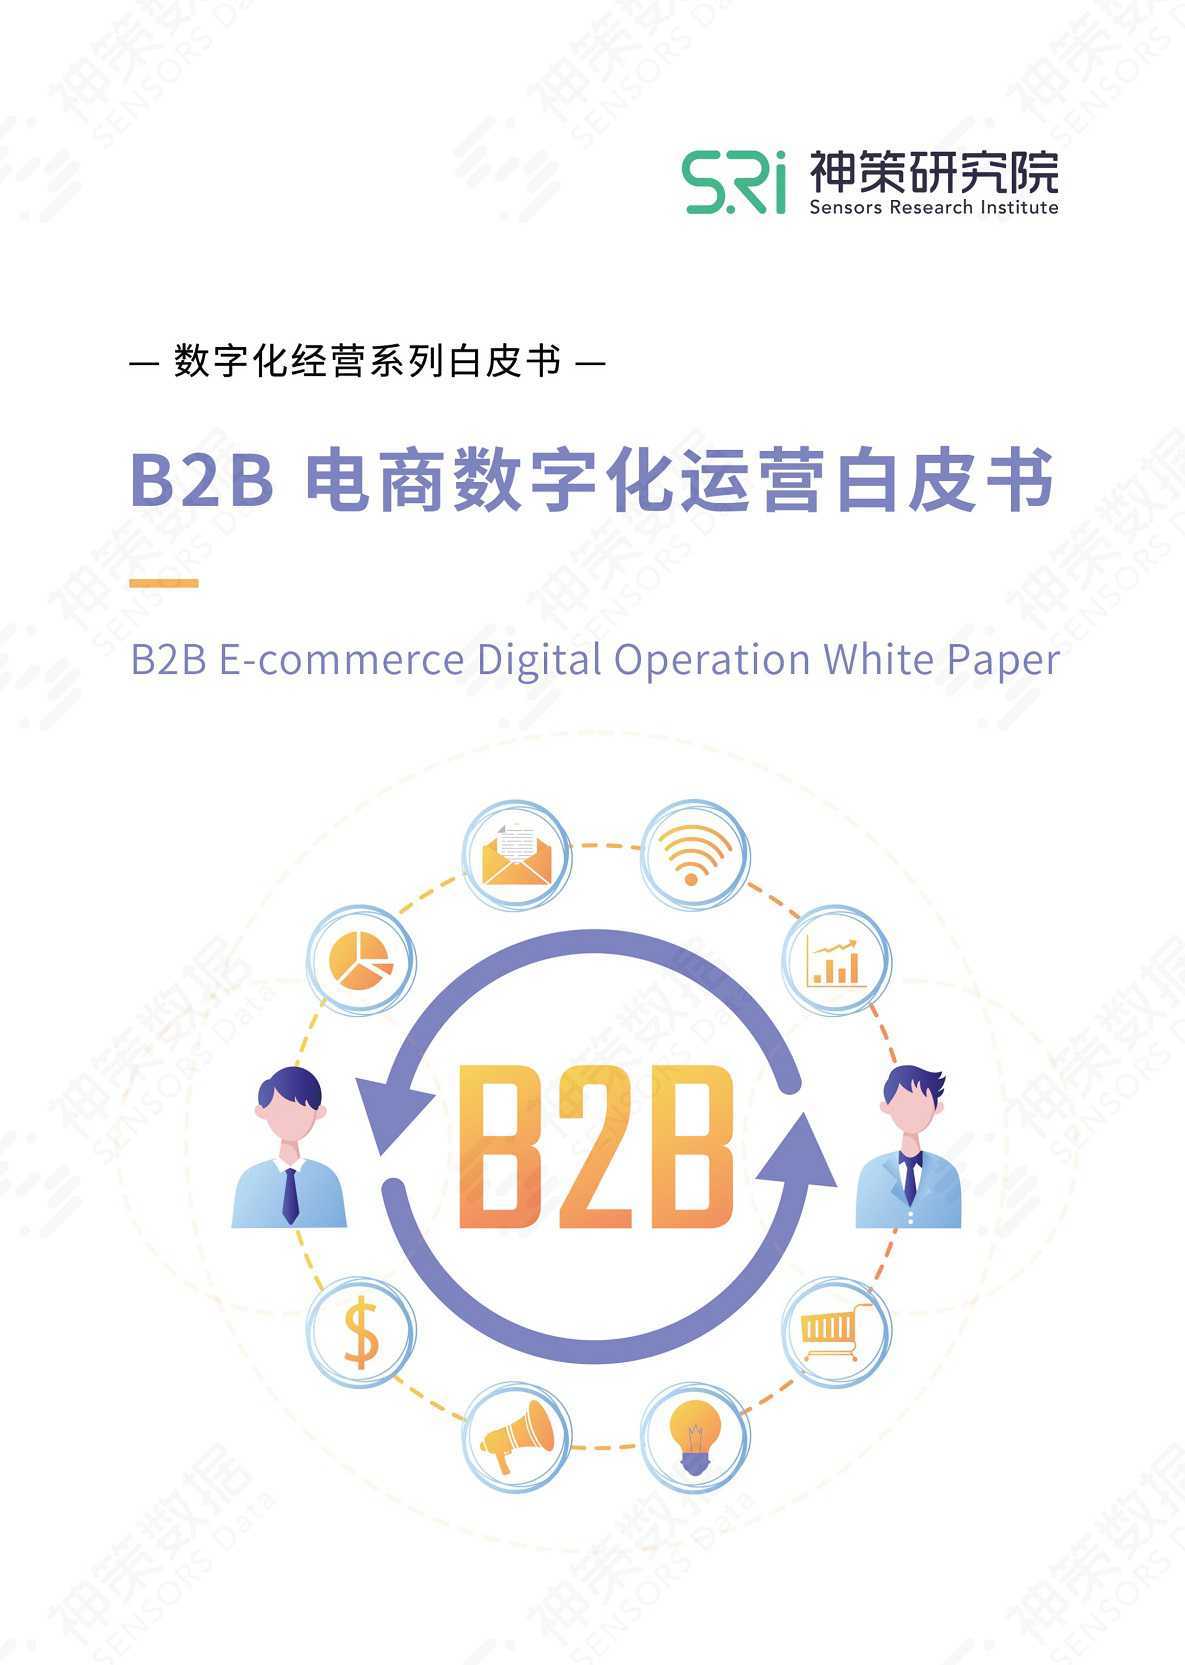 【营销任意门】B2B电商数字化运营白皮书-神策研究院